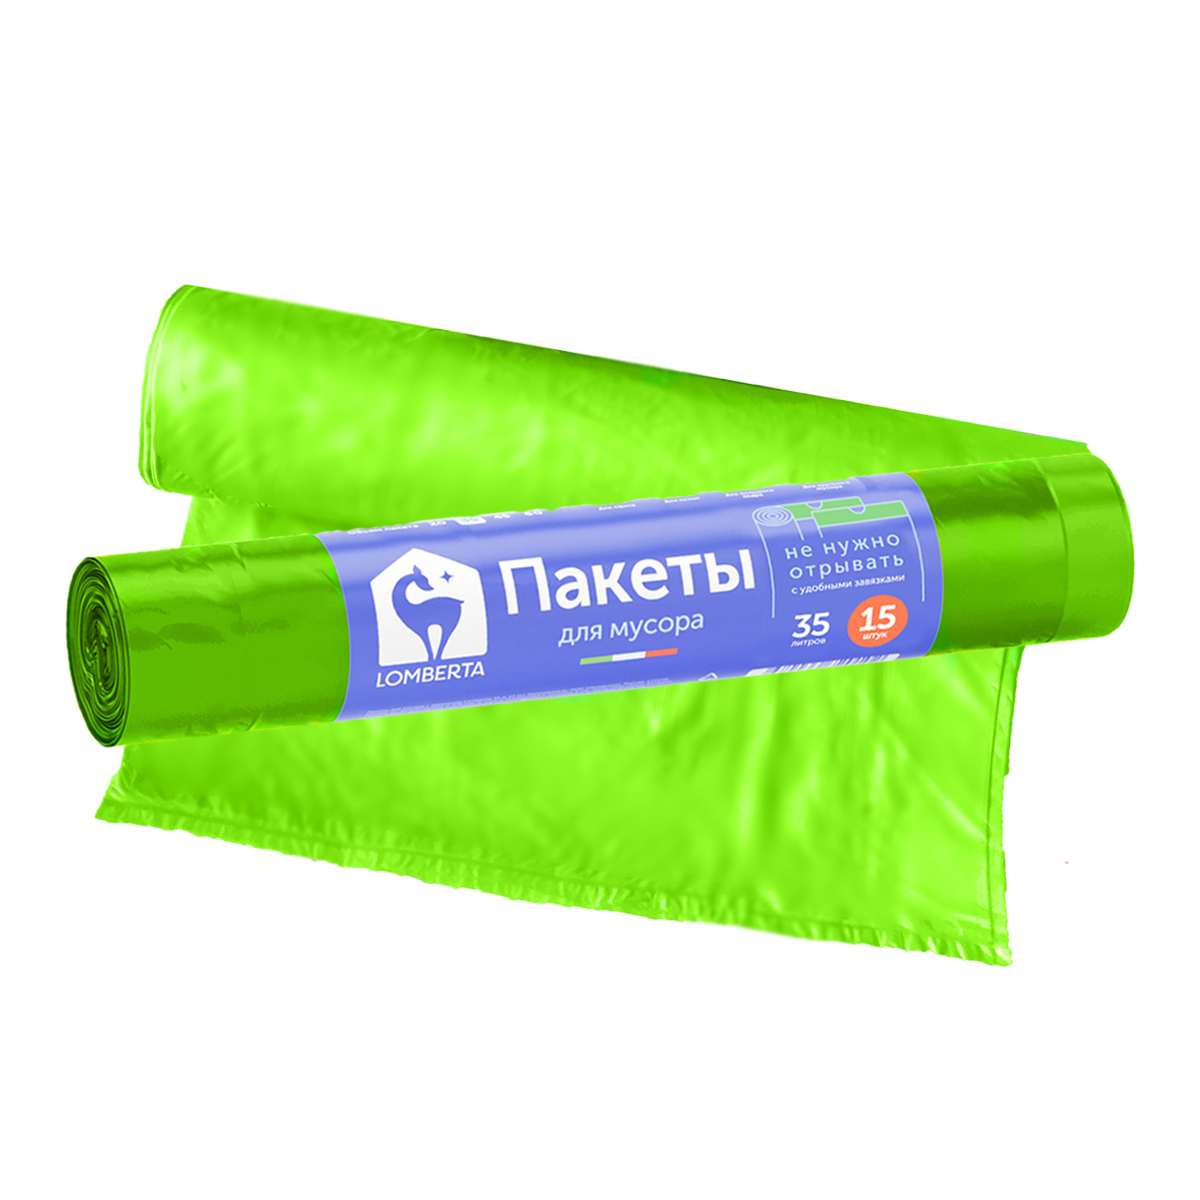 пакеты для мусора lomberta с принтом 60л 10шт с затяжками Пакет для мусора Lomberta overlap 15 шт 35 л